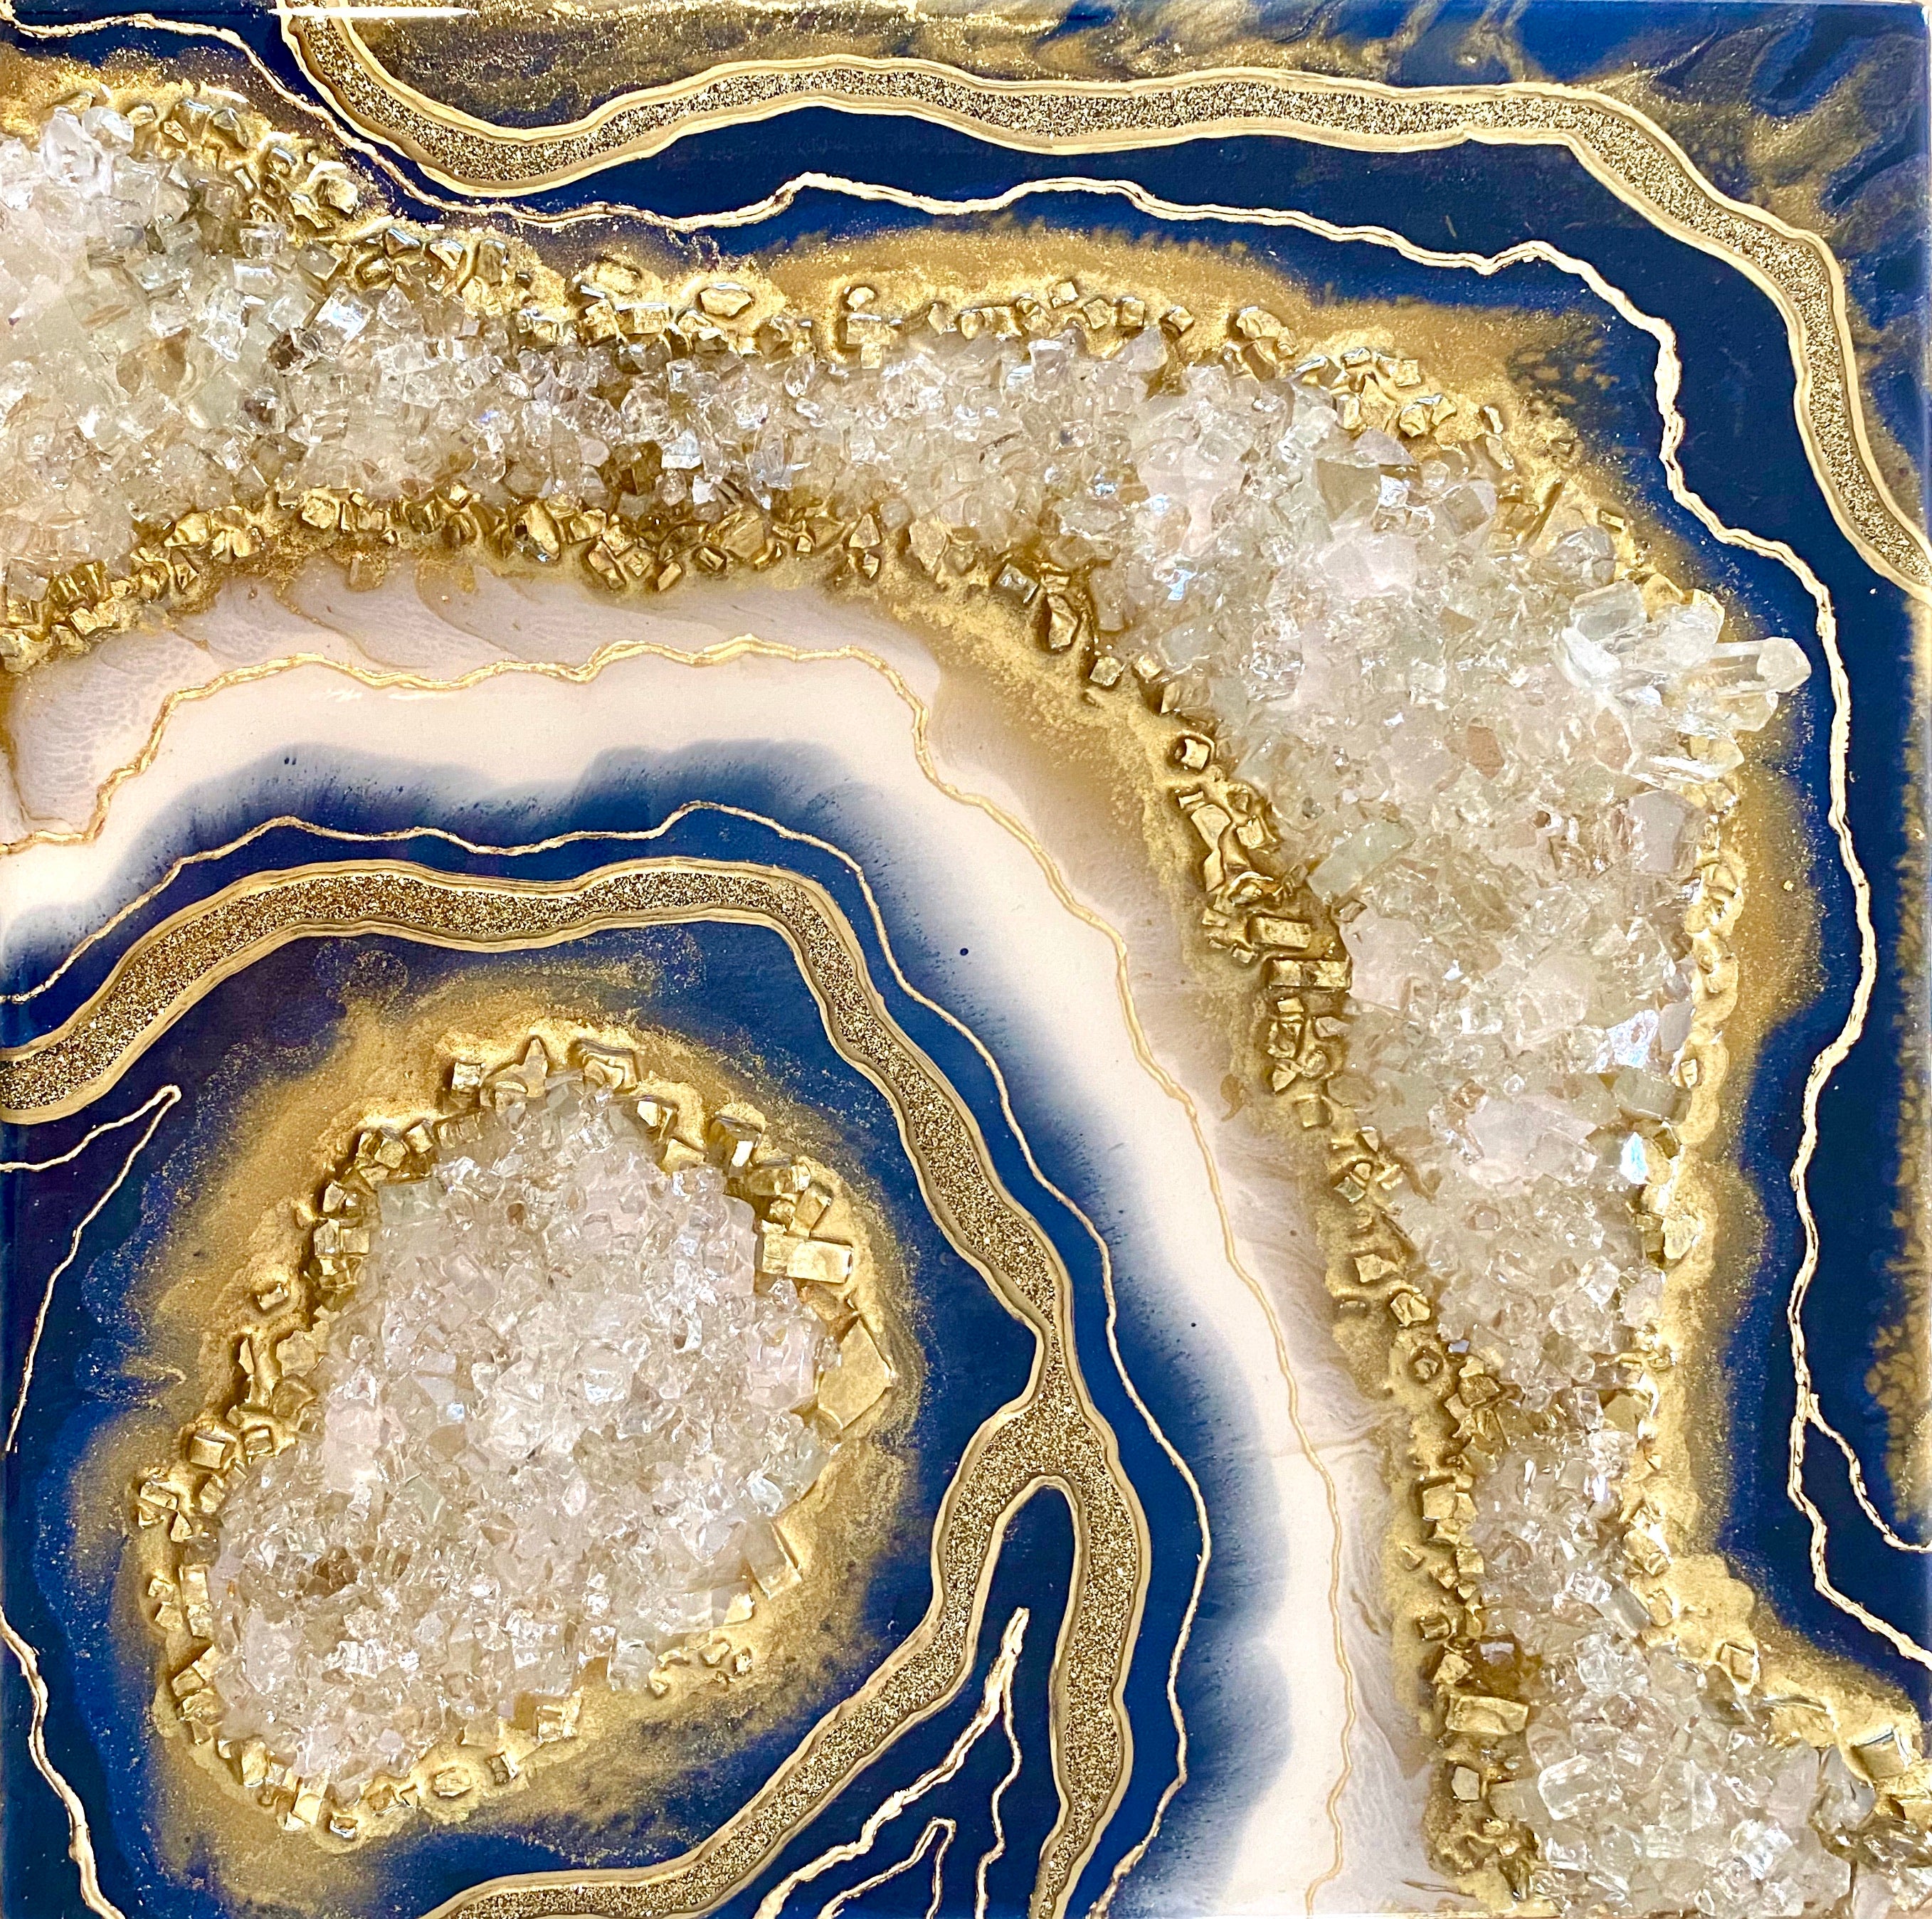 Royal Blue & White Crystal Quartz Geode Resin Art 12X12 – Cimber Designs